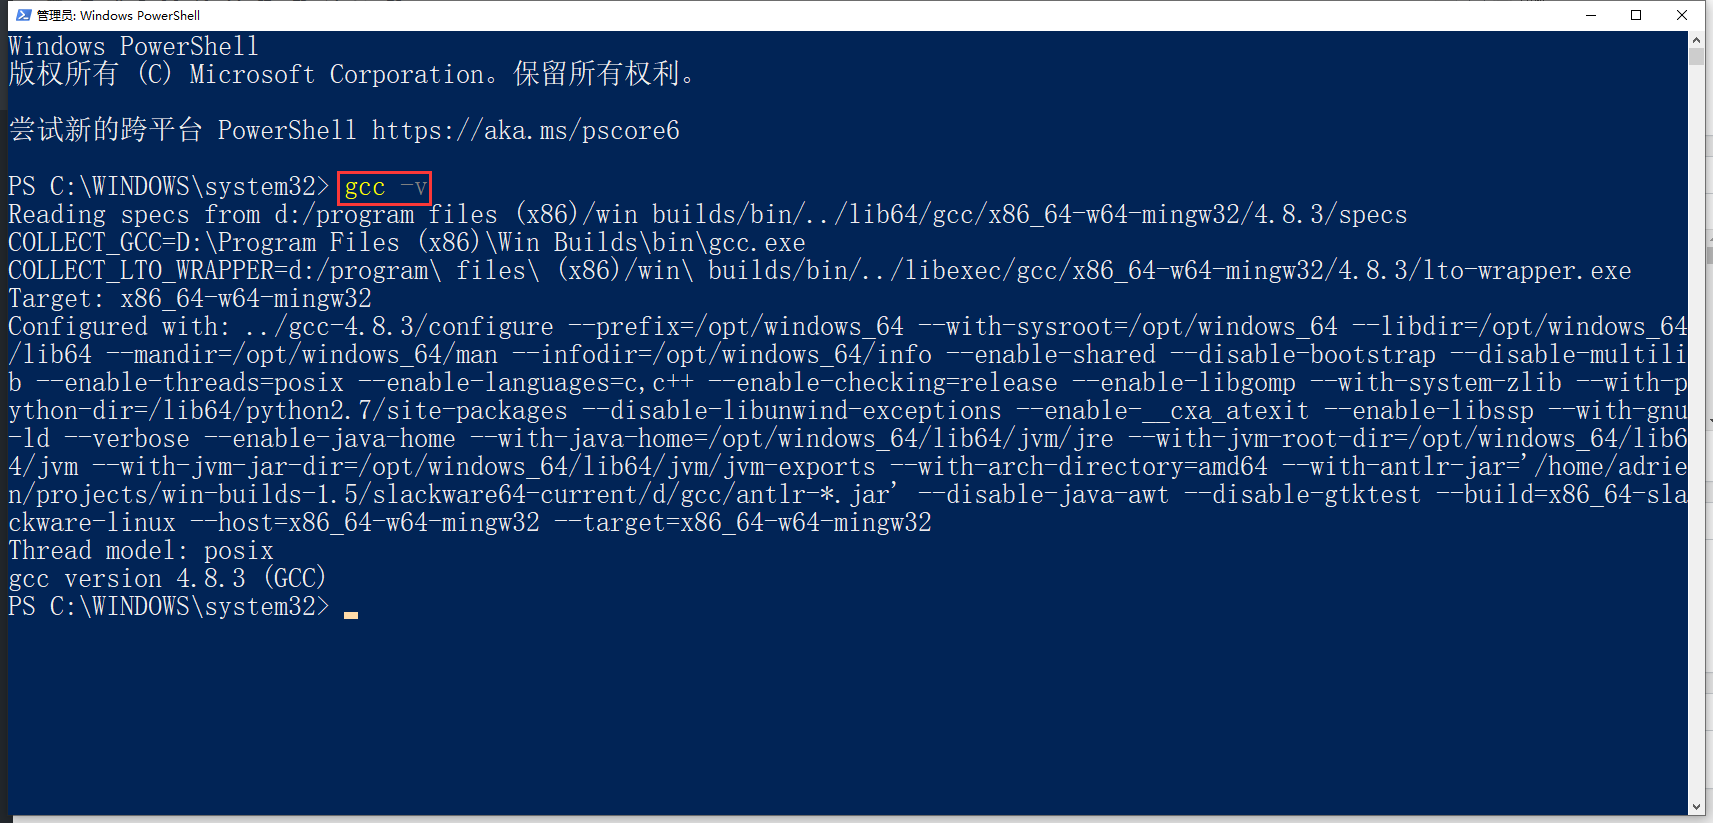 打开 Windows PowerShell，运行命令：gcc -v，将会显示 Mingw-w64 的组件列表。安装成功。